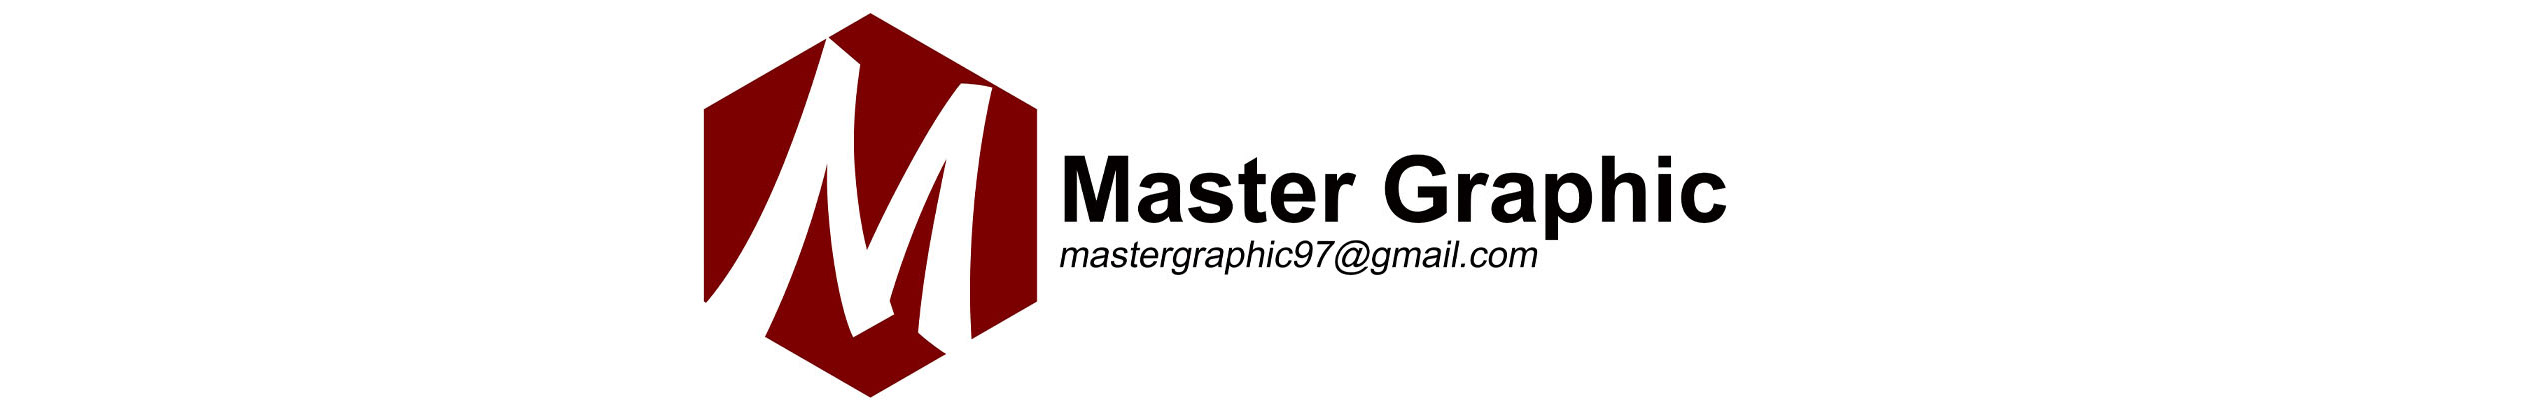 Master Graphic Studio's profile banner